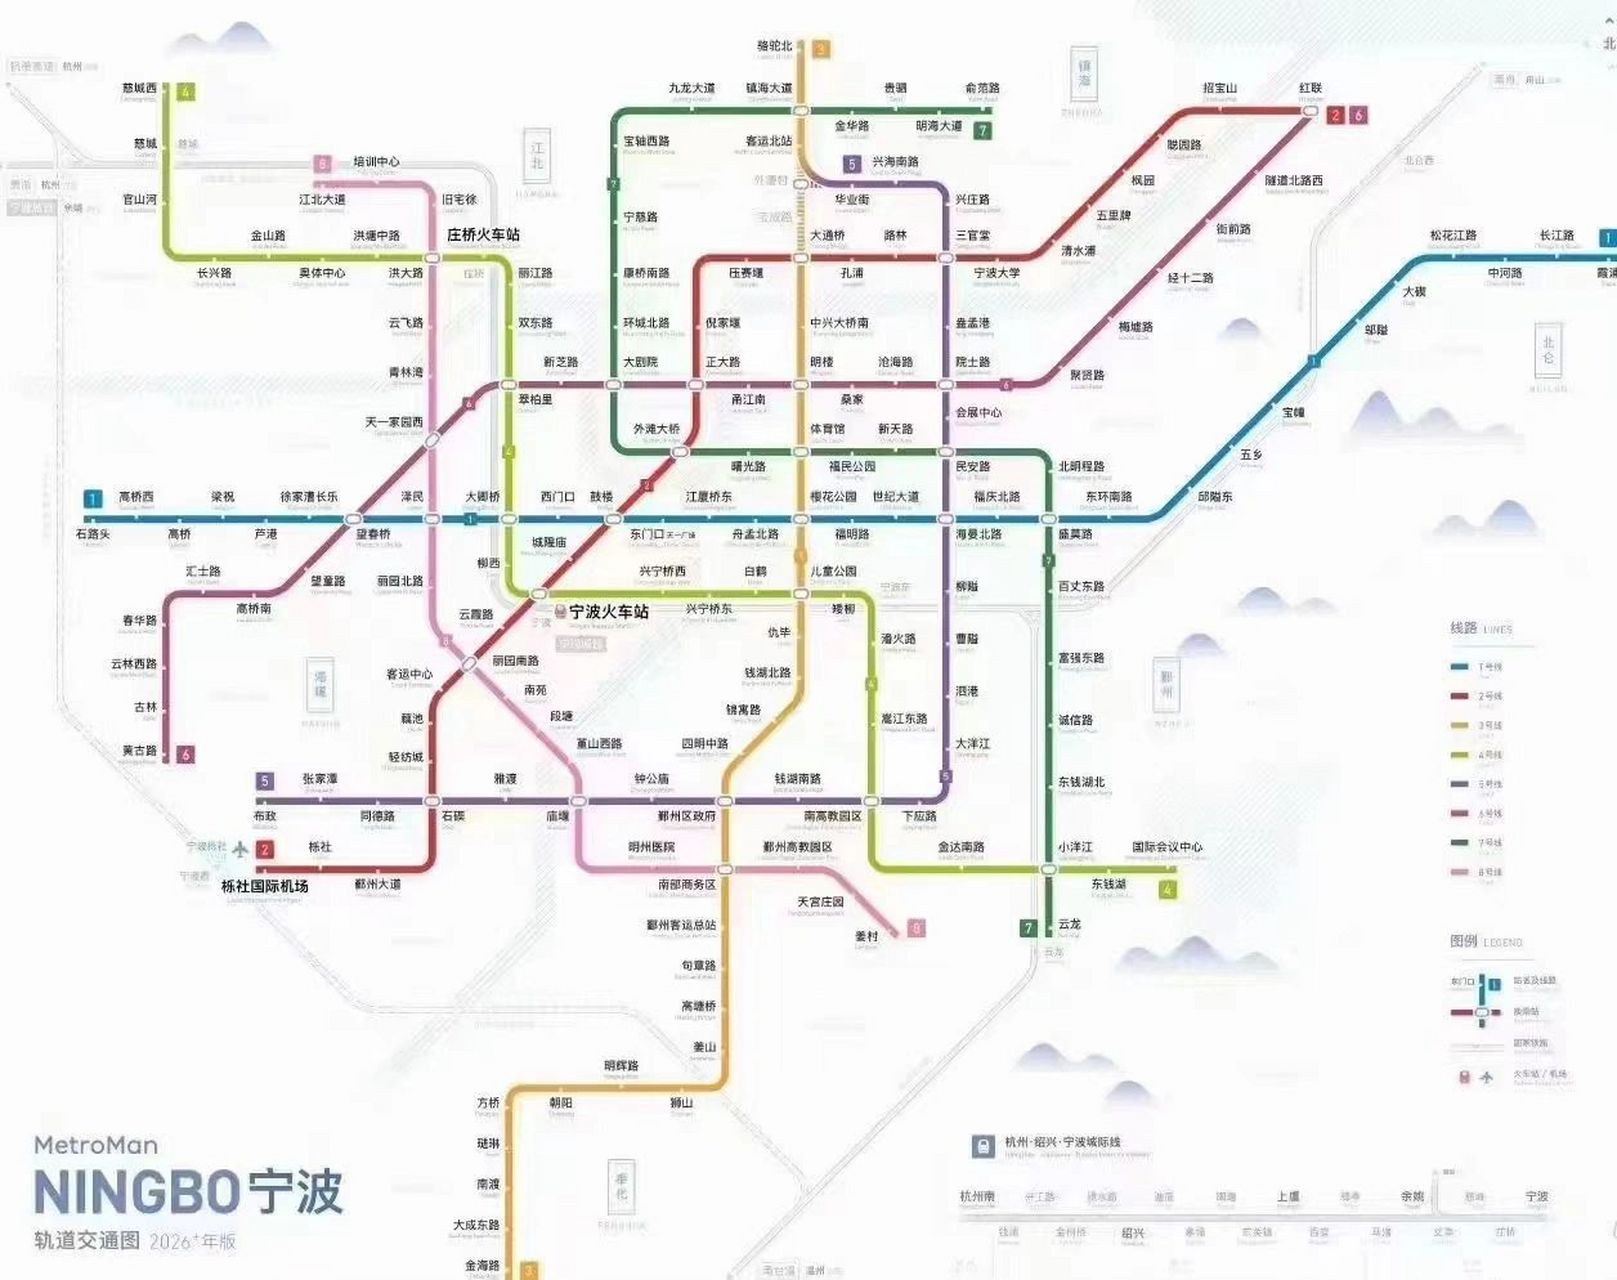 宁波地铁6号线线路图图片